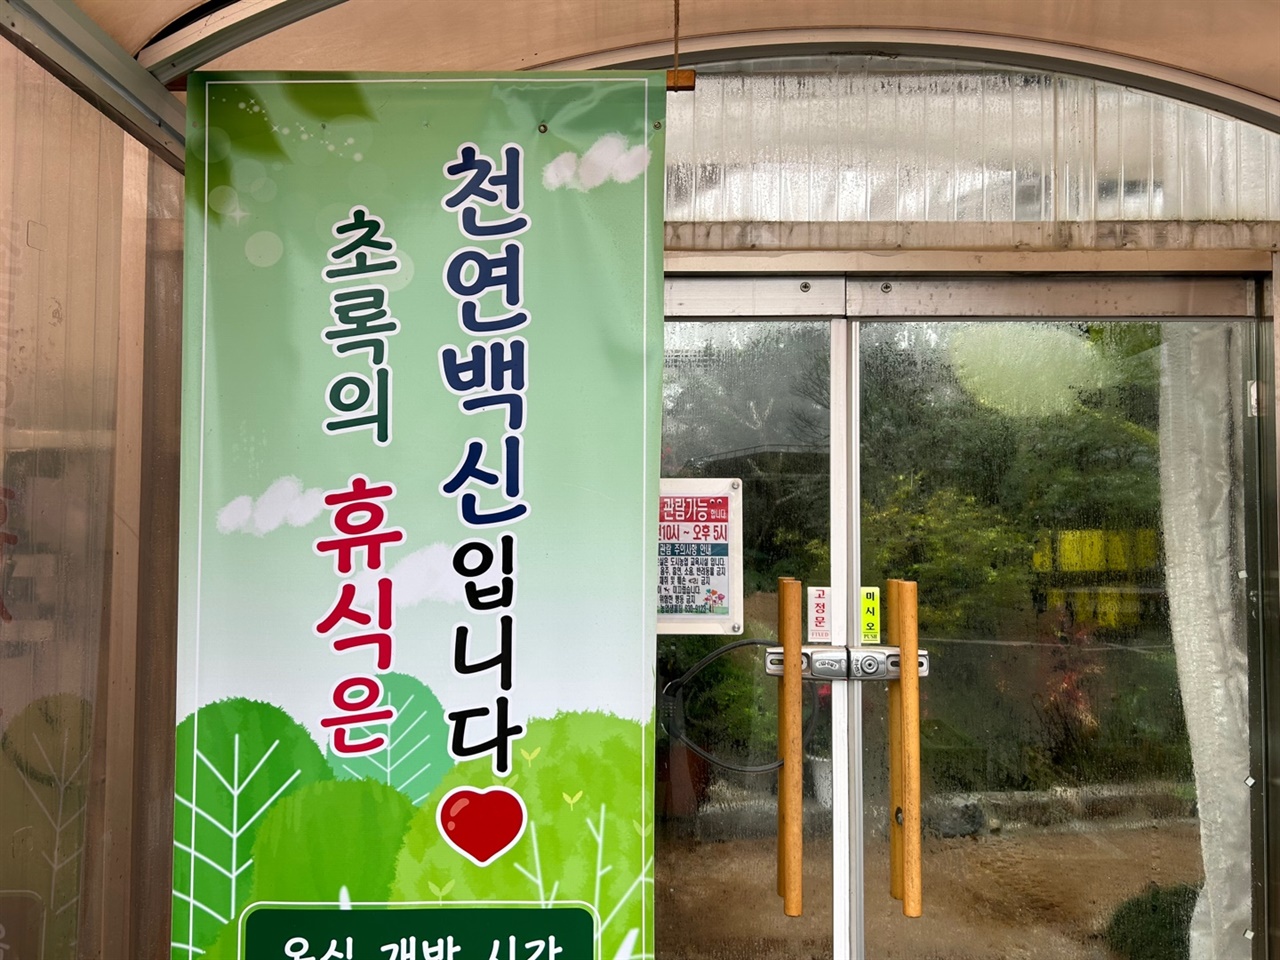 온실 ‘들빛’은 군민들을 위해 홍성군농업기술센터가 운영하는 곳이다. 유명 식물원 못지않은 시설로 주말은 물론, 평일에도 군민들이 찾는 곳이다.